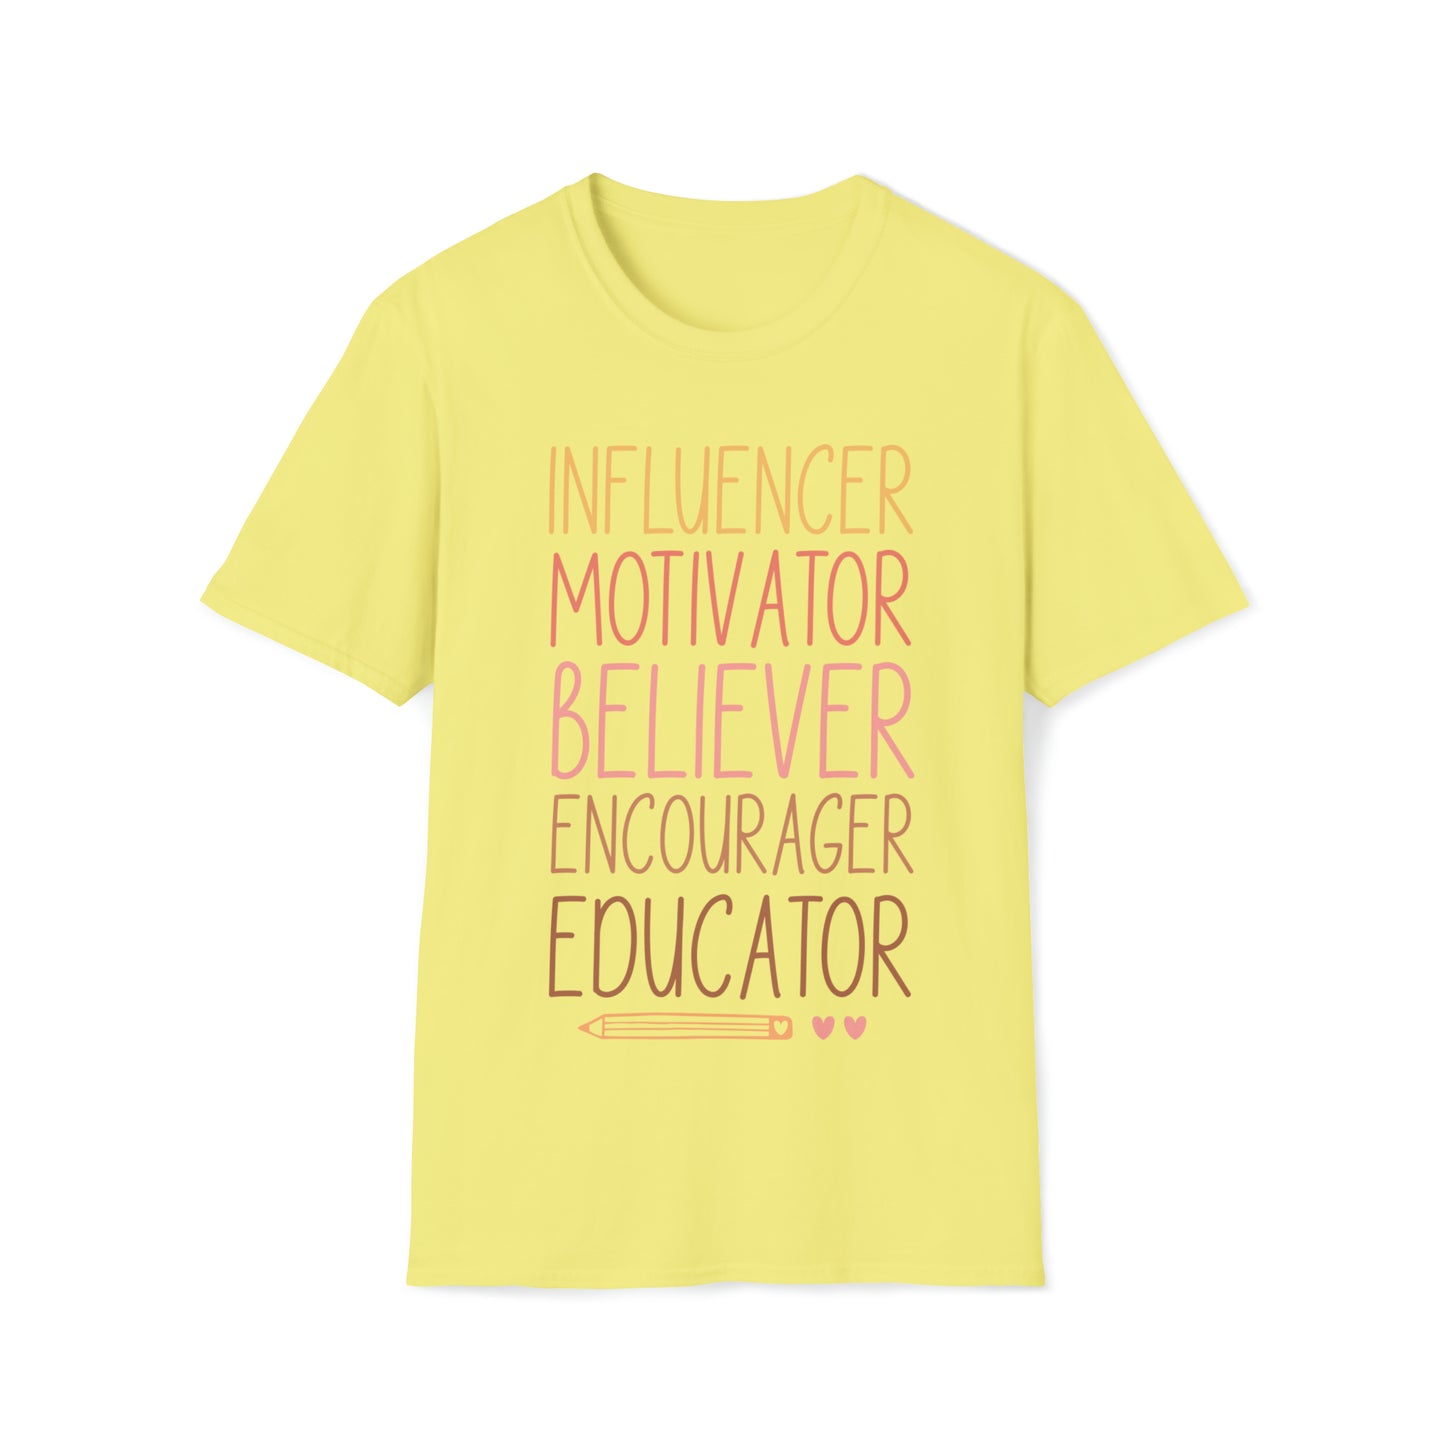 Motivator Educator Shirt for Teachers